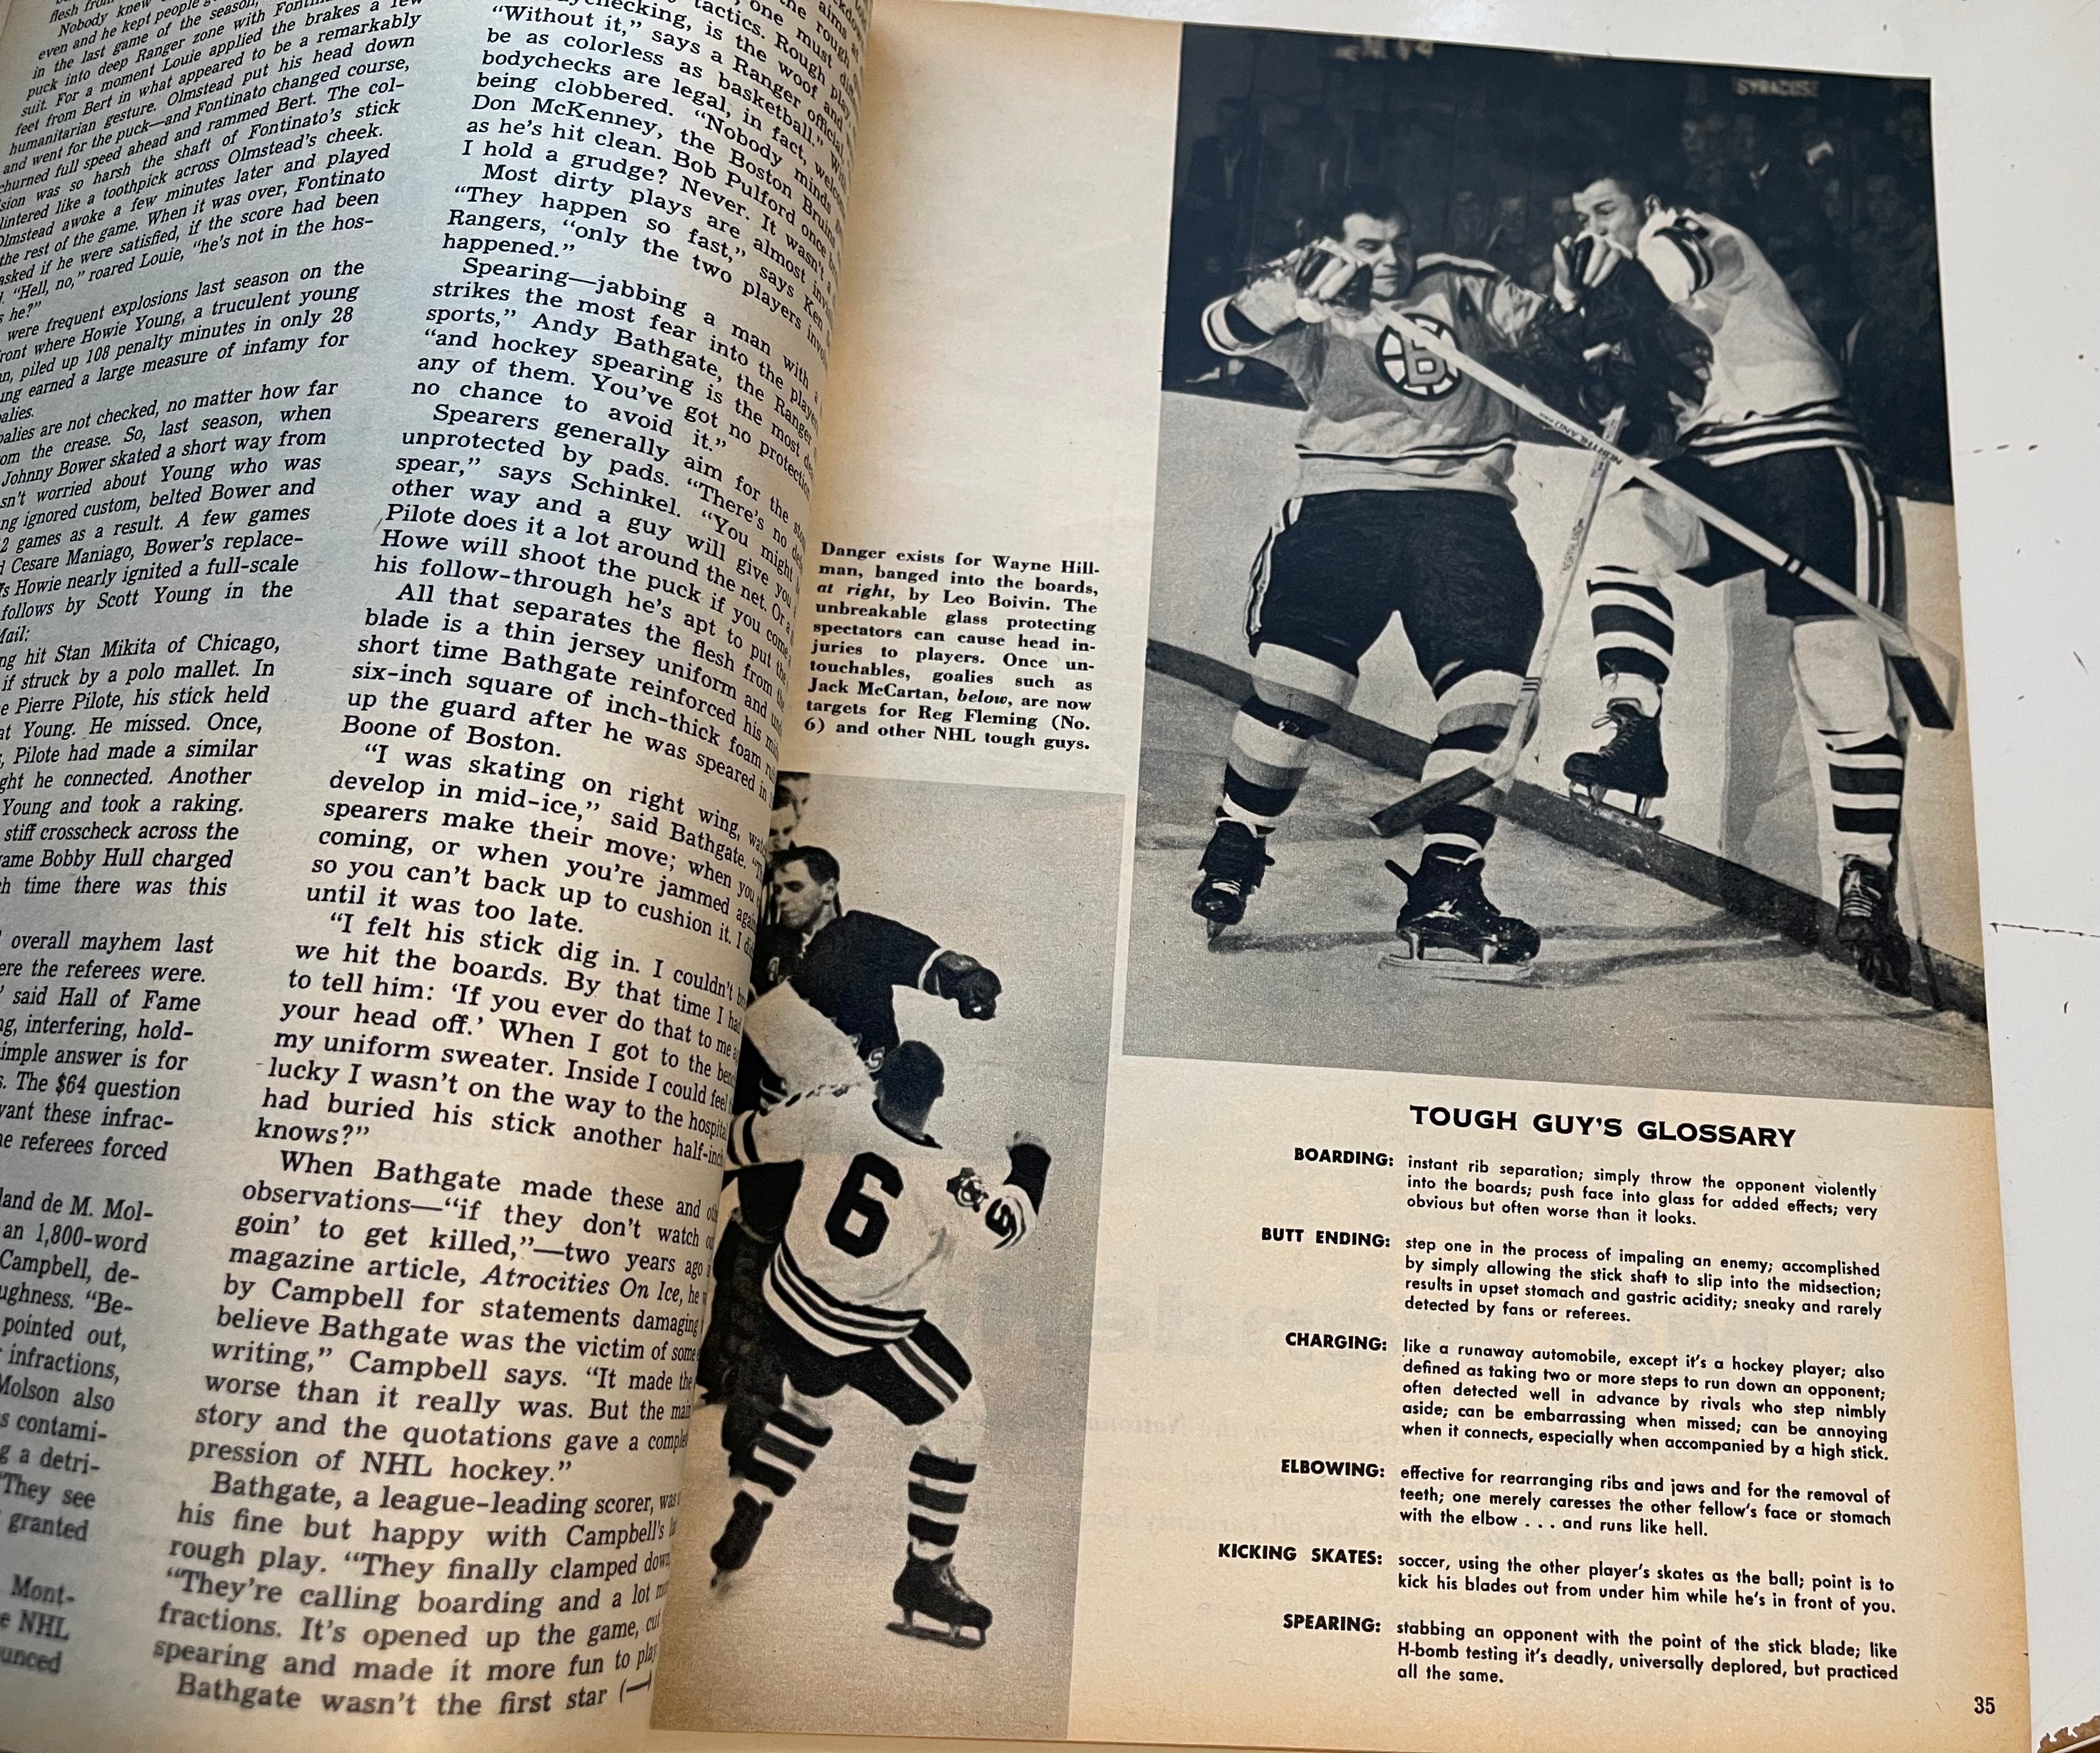 Wilt Chamberlain rare Sport magazine 1962